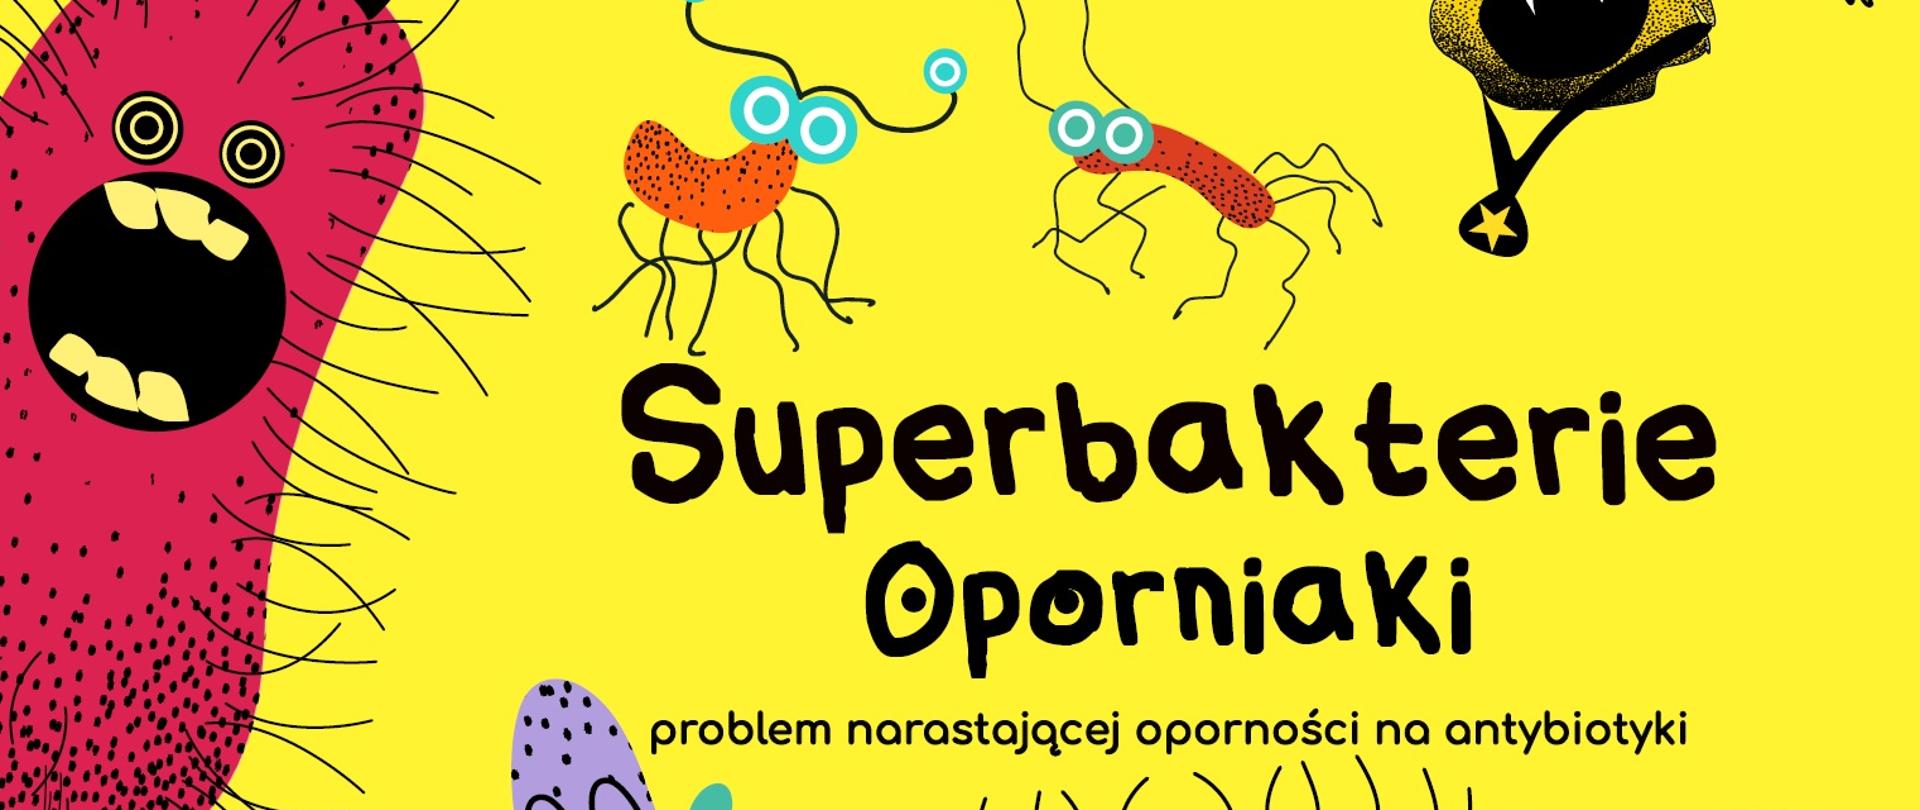 Superbakterie oporniaki